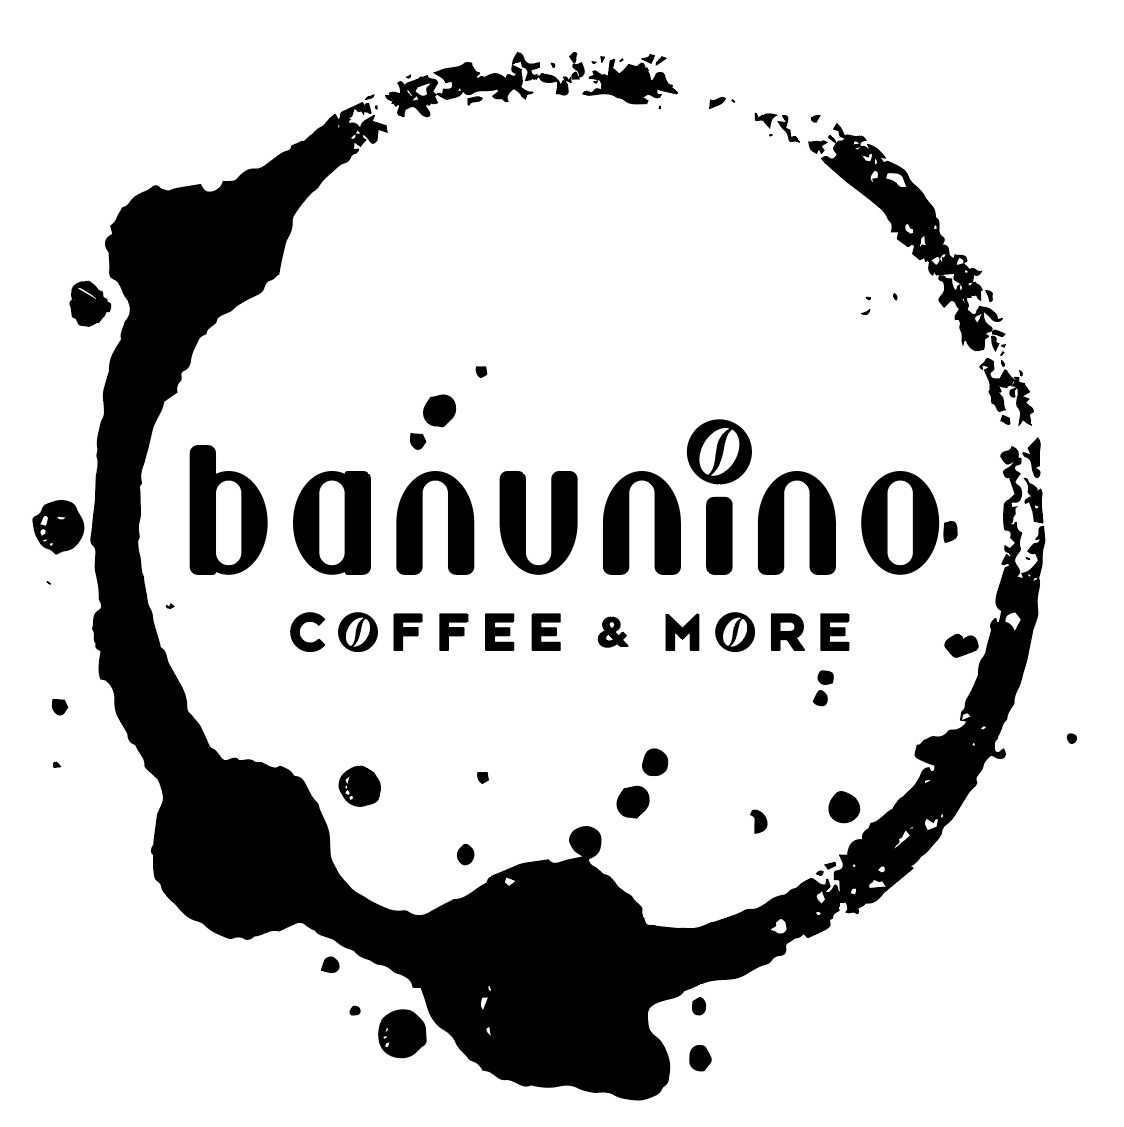 Banunino – Coffee and More